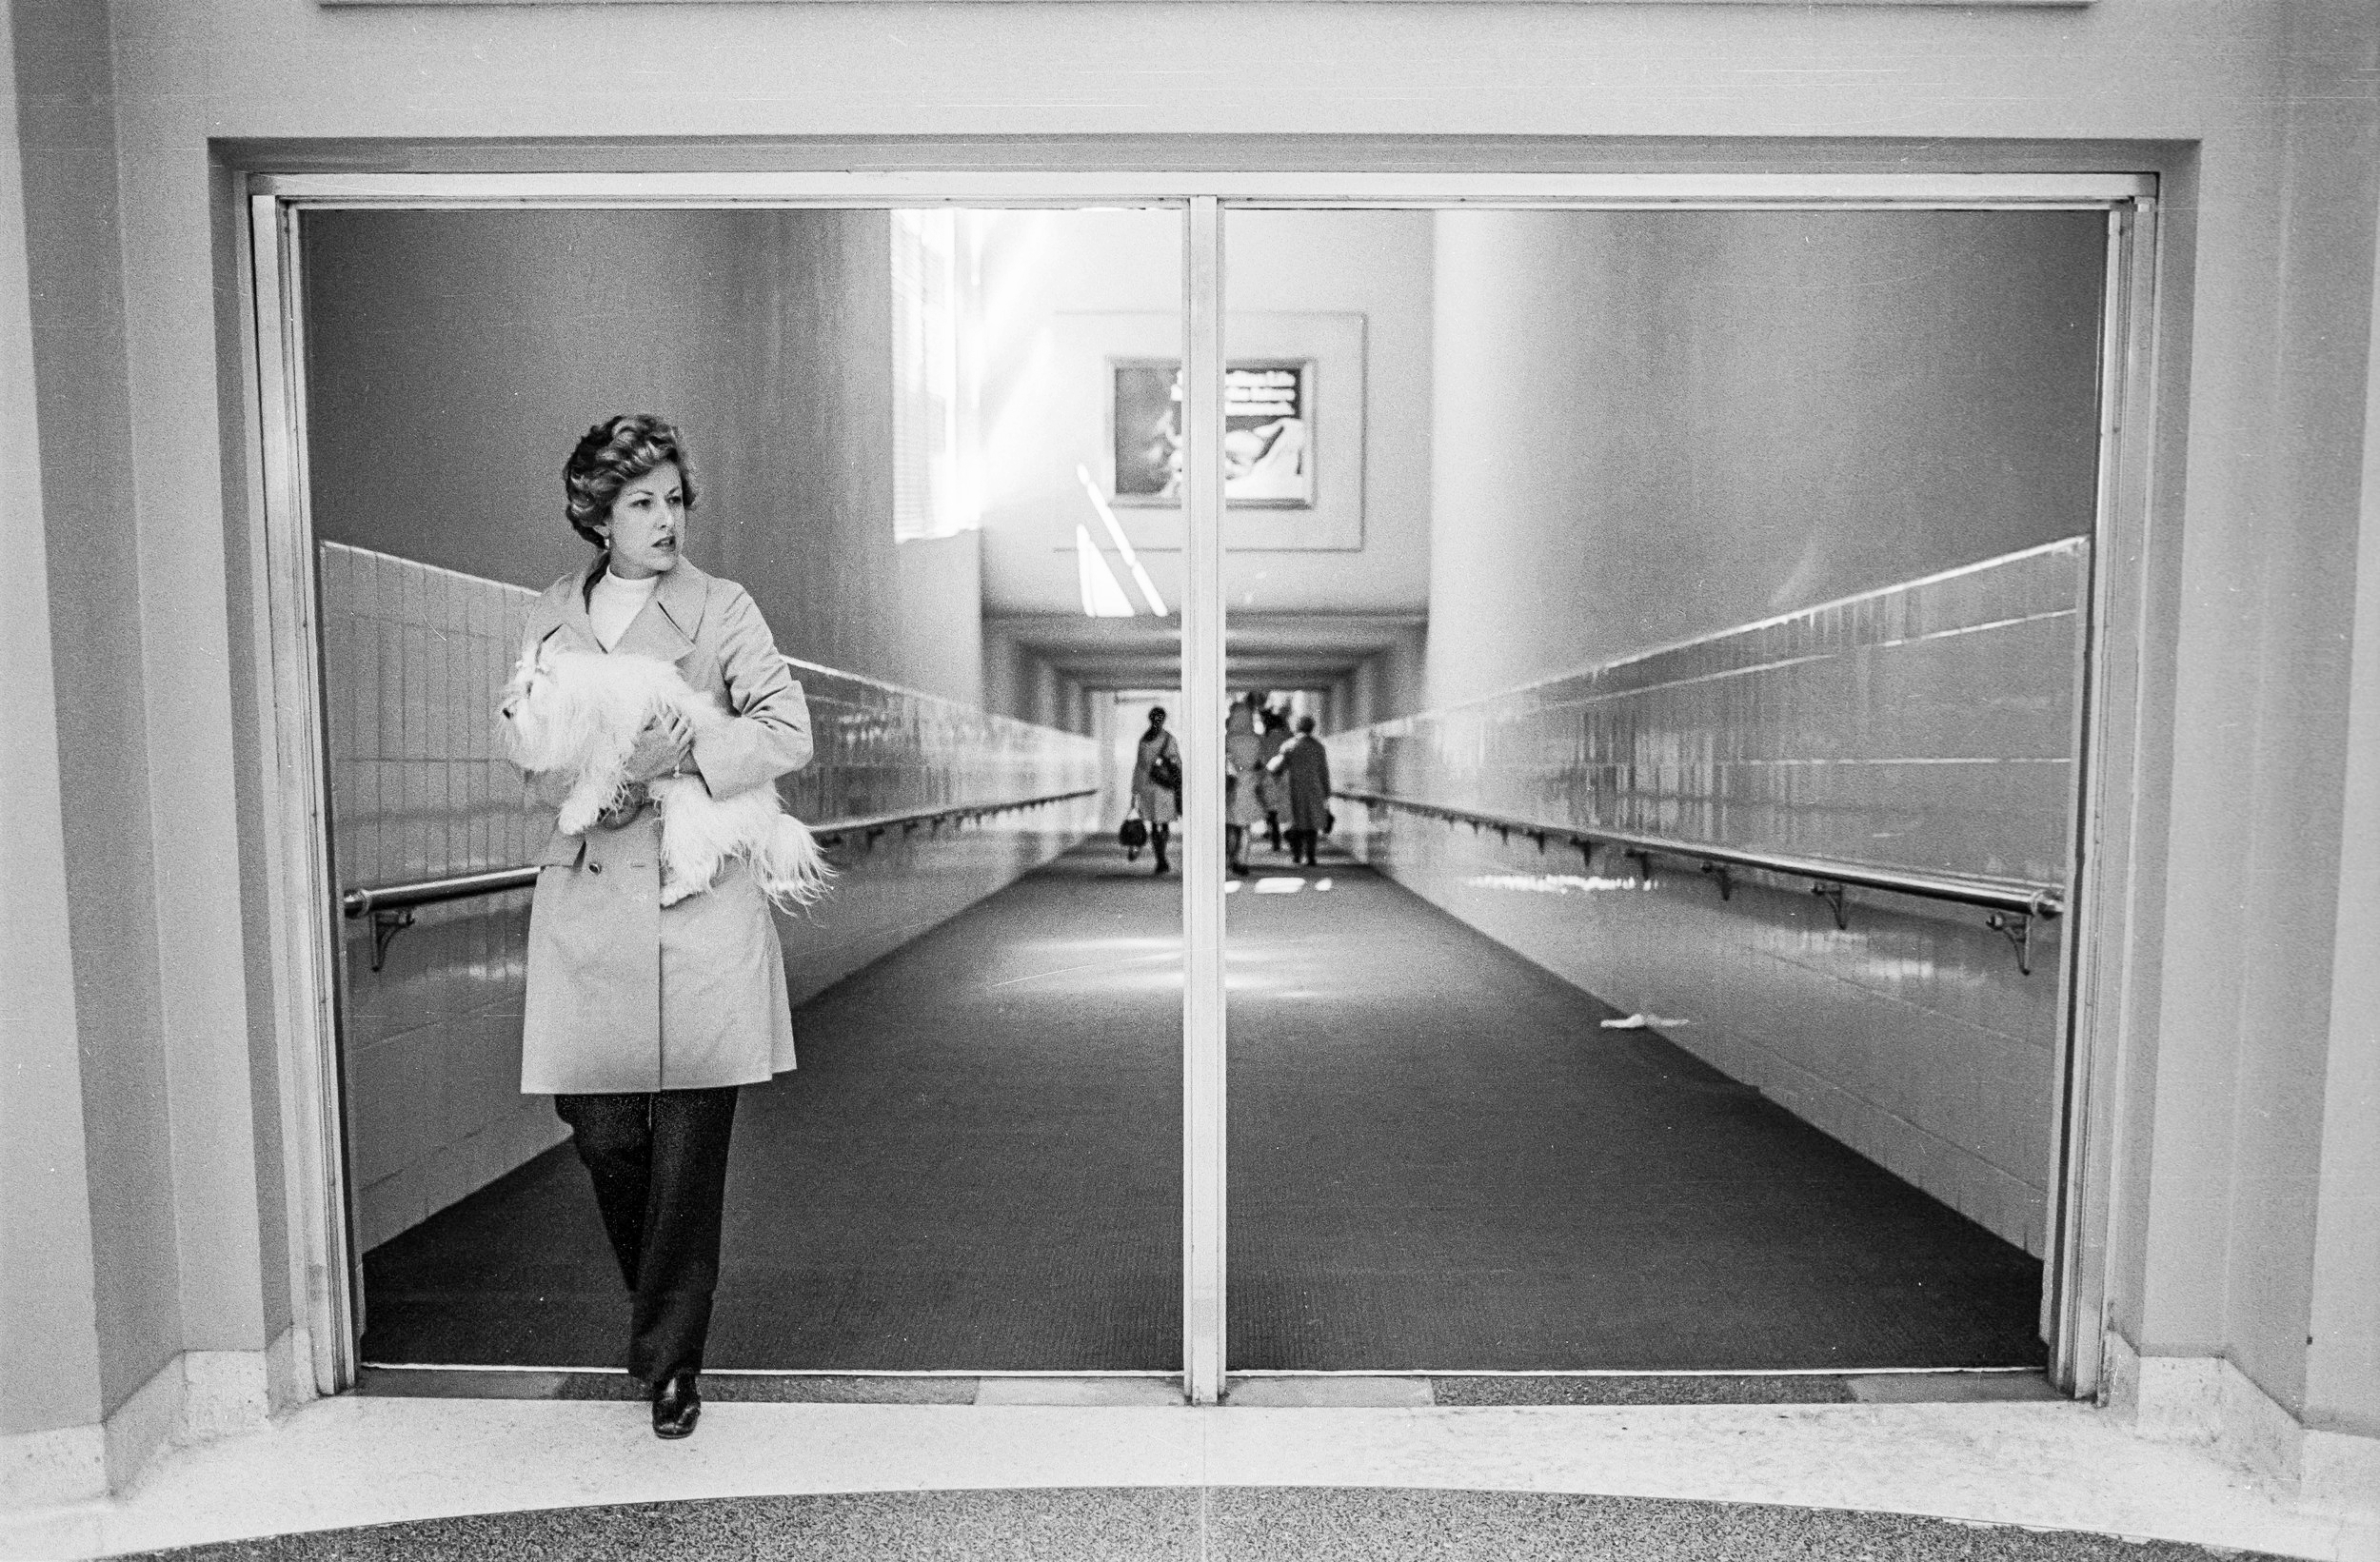   San Francisco Airport, 1973  